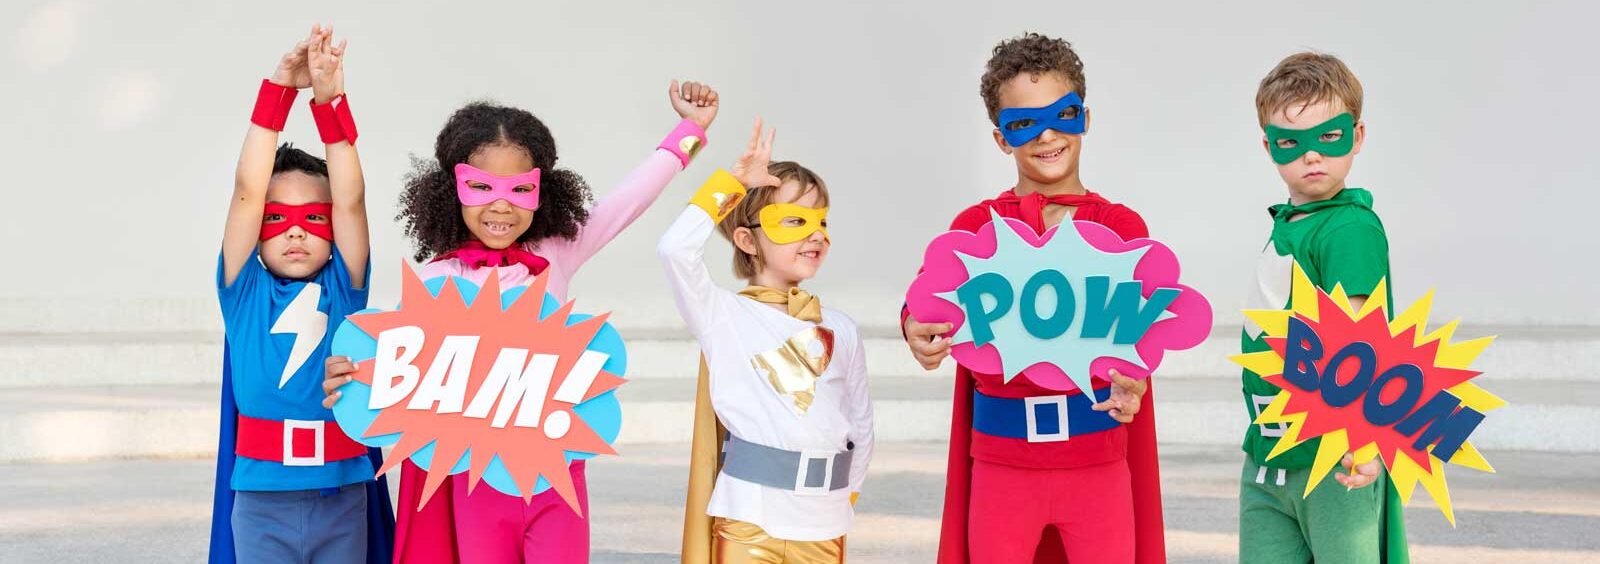 Solea Dental Laser - Five kids dressed as superheros